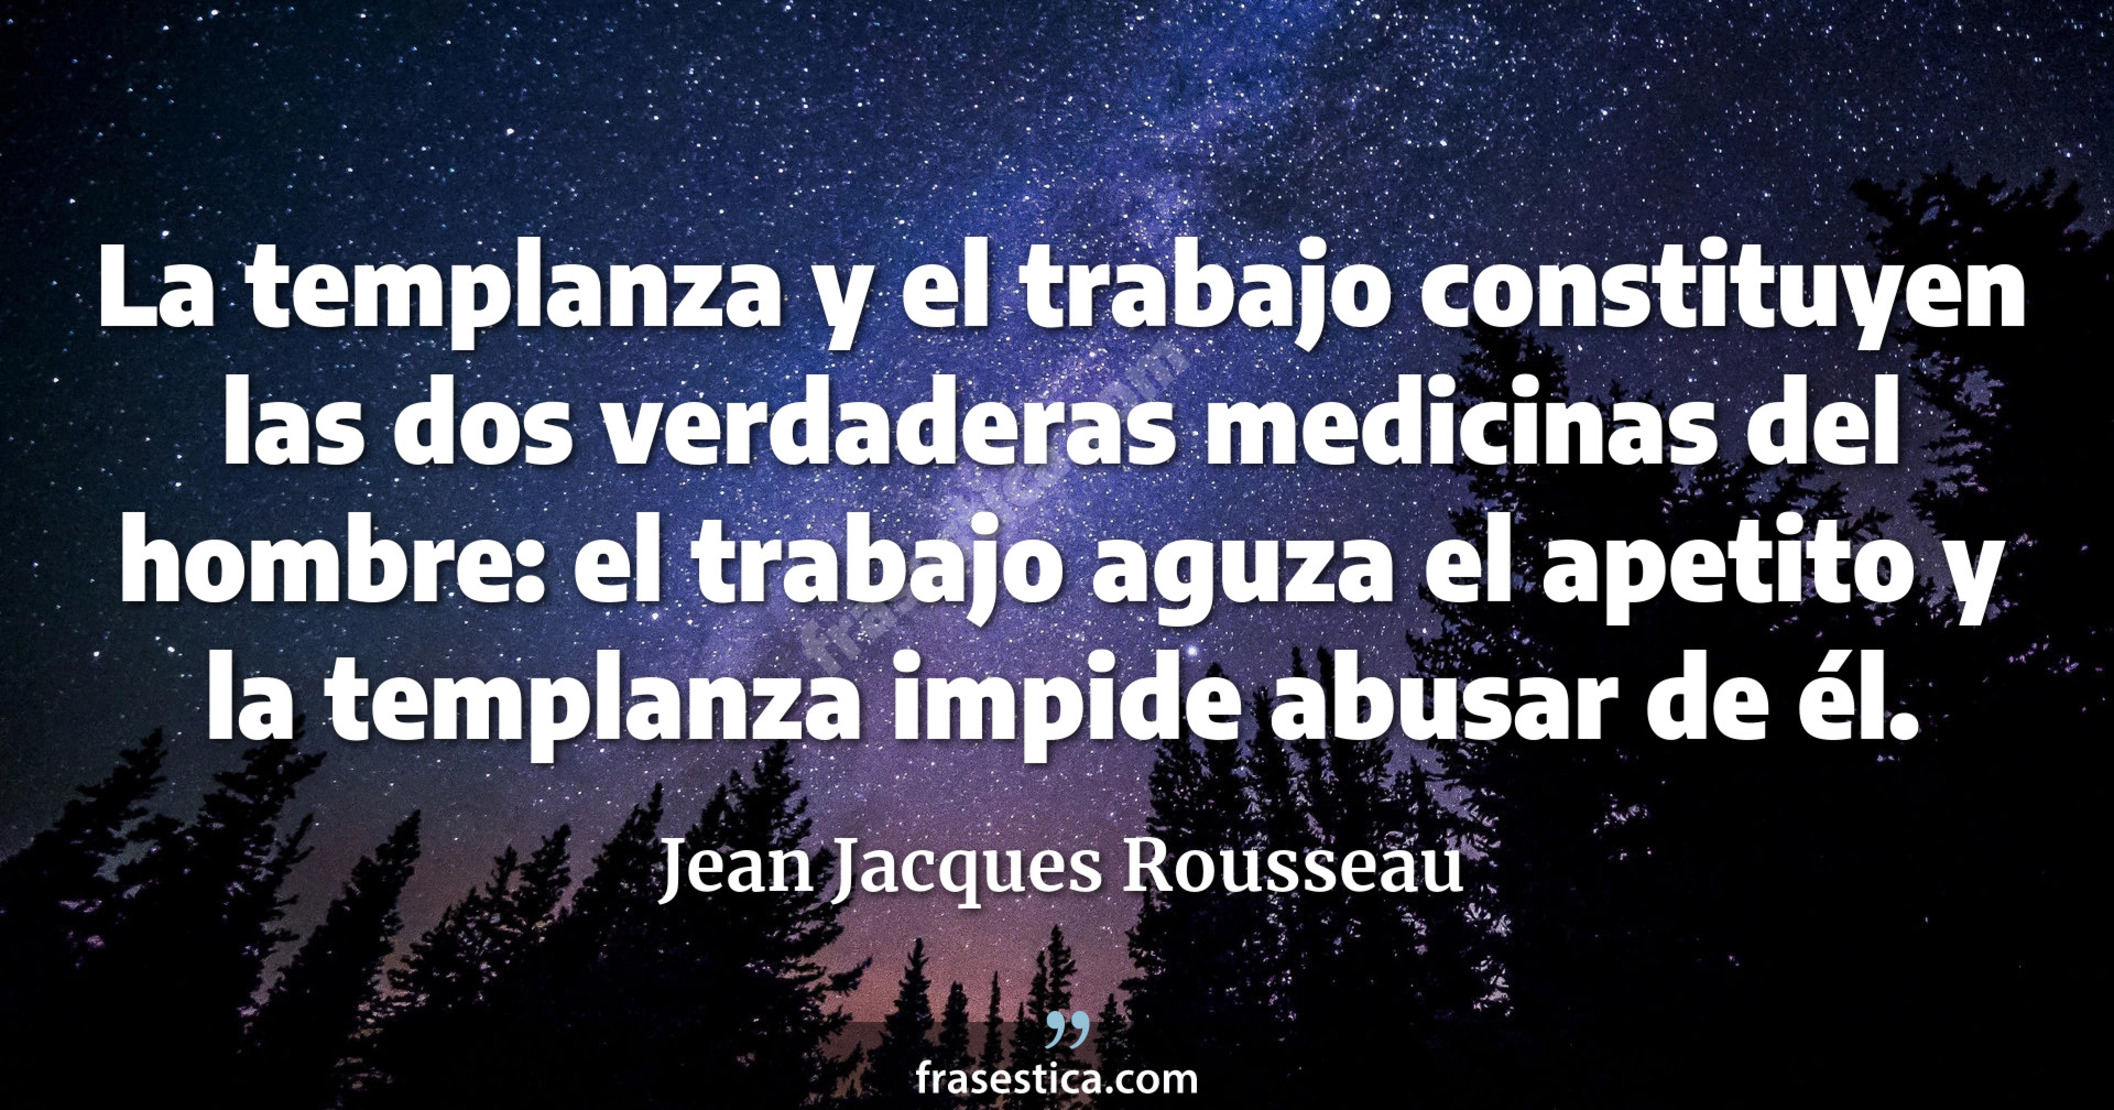 La templanza y el trabajo constituyen las dos verdaderas medicinas del hombre: el trabajo aguza el apetito y la templanza impide abusar de él. - Jean Jacques Rousseau